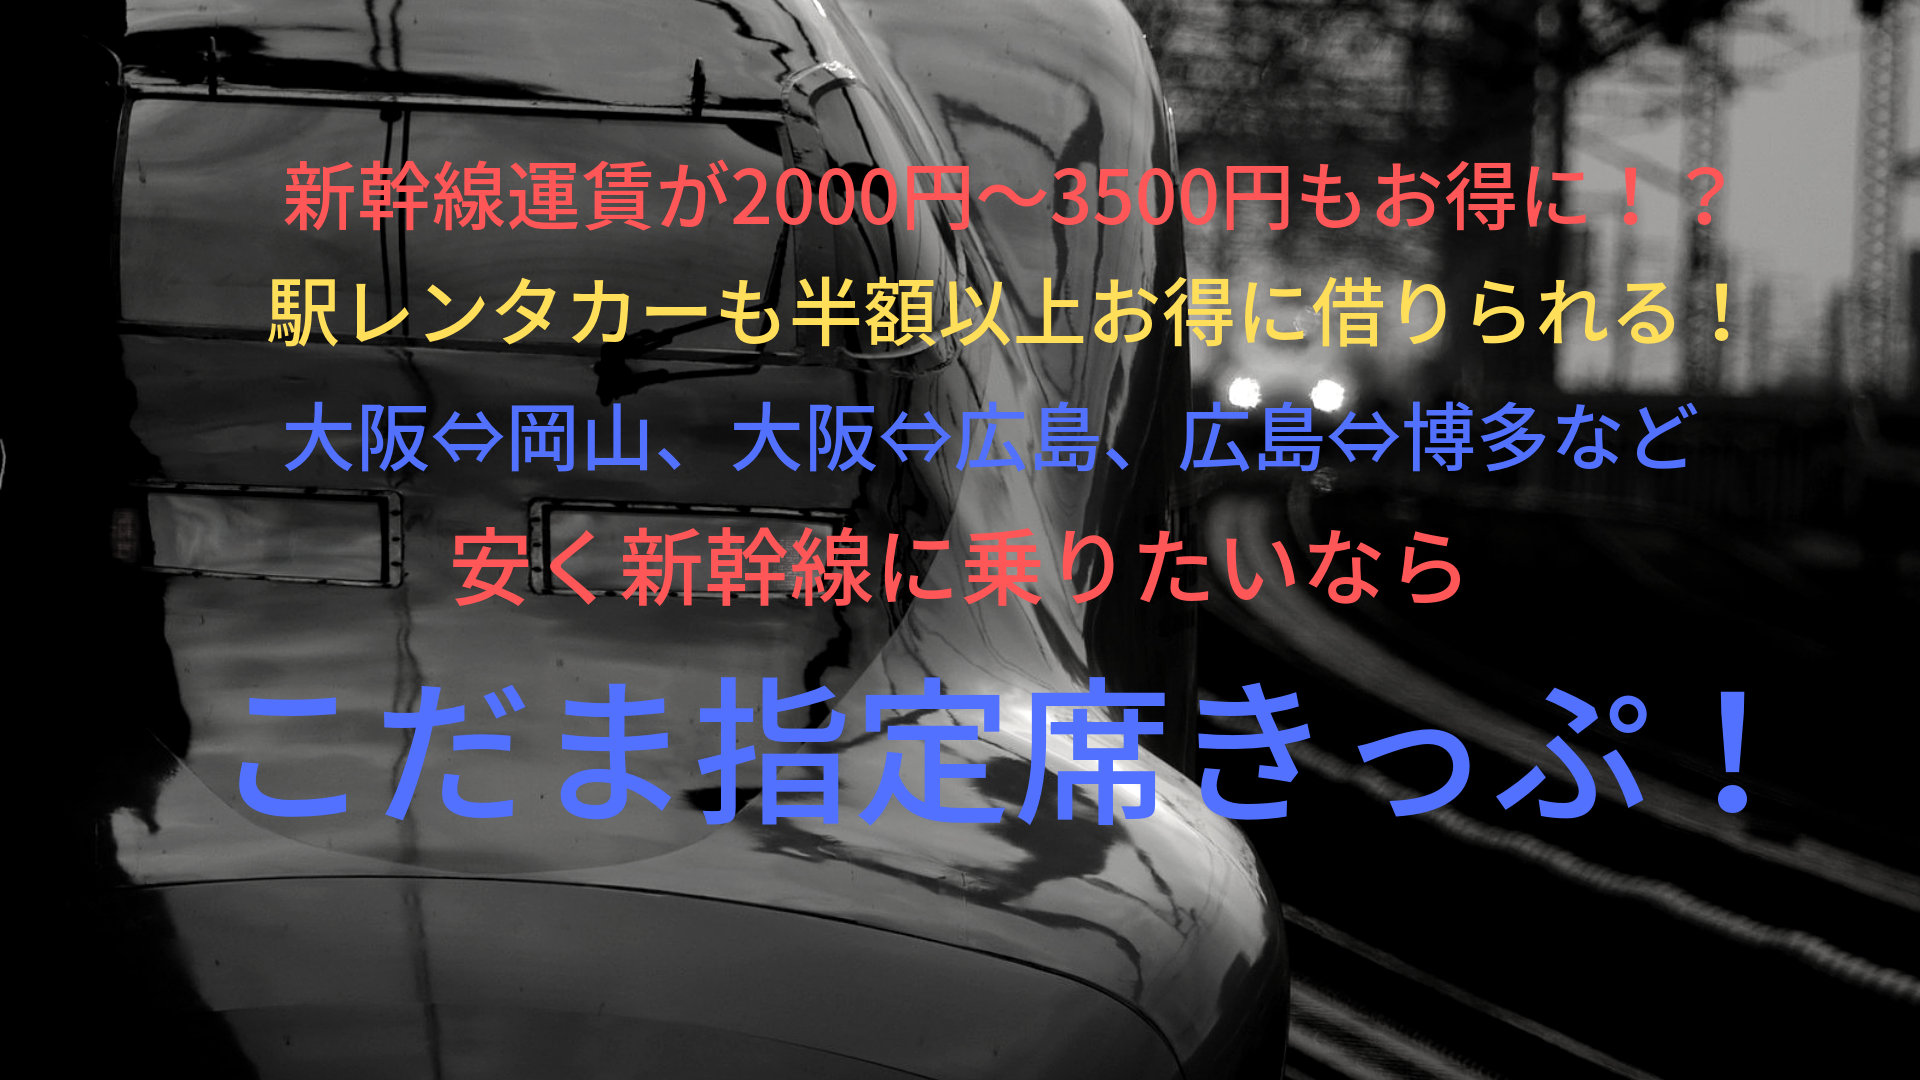 00円 3500円もお得に こだま指定席きっぷで山陽新幹線に安く乗ろう ばしたく交通